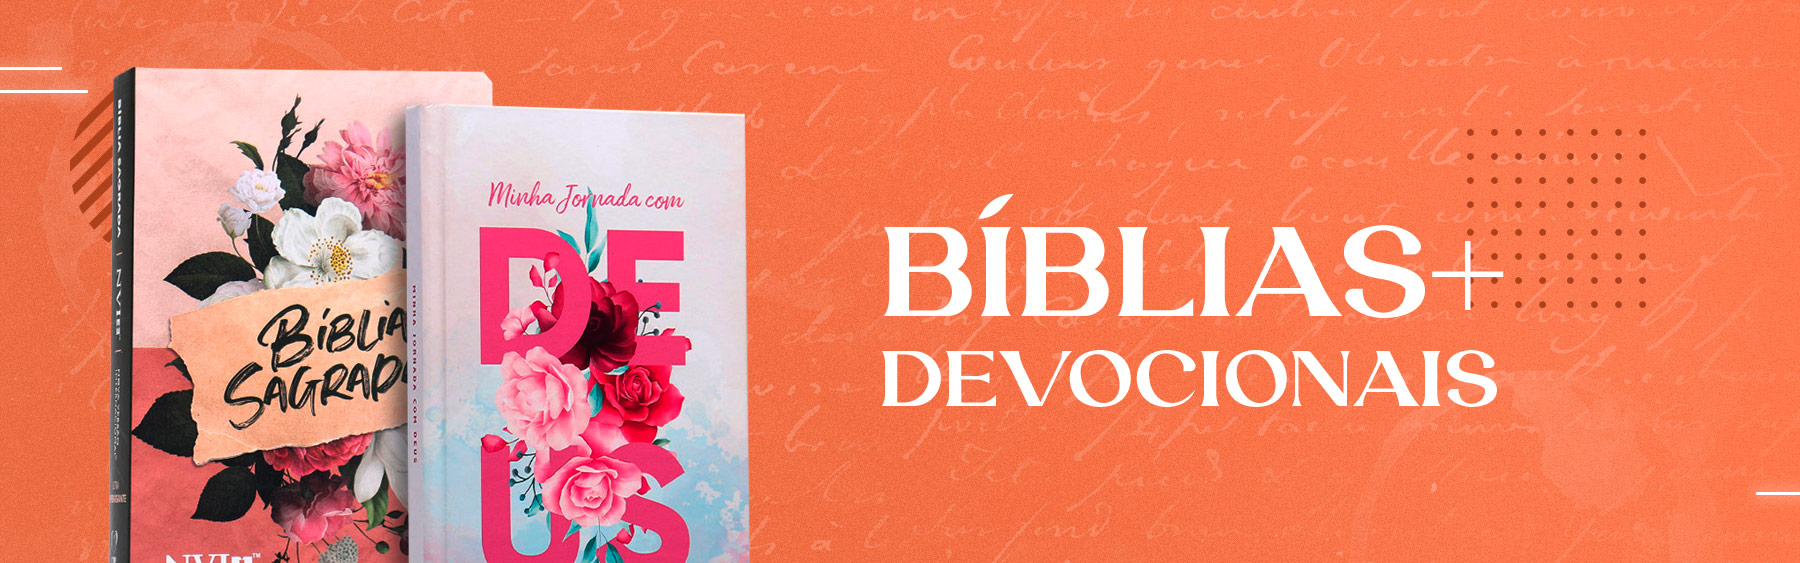 biblia e devocionais